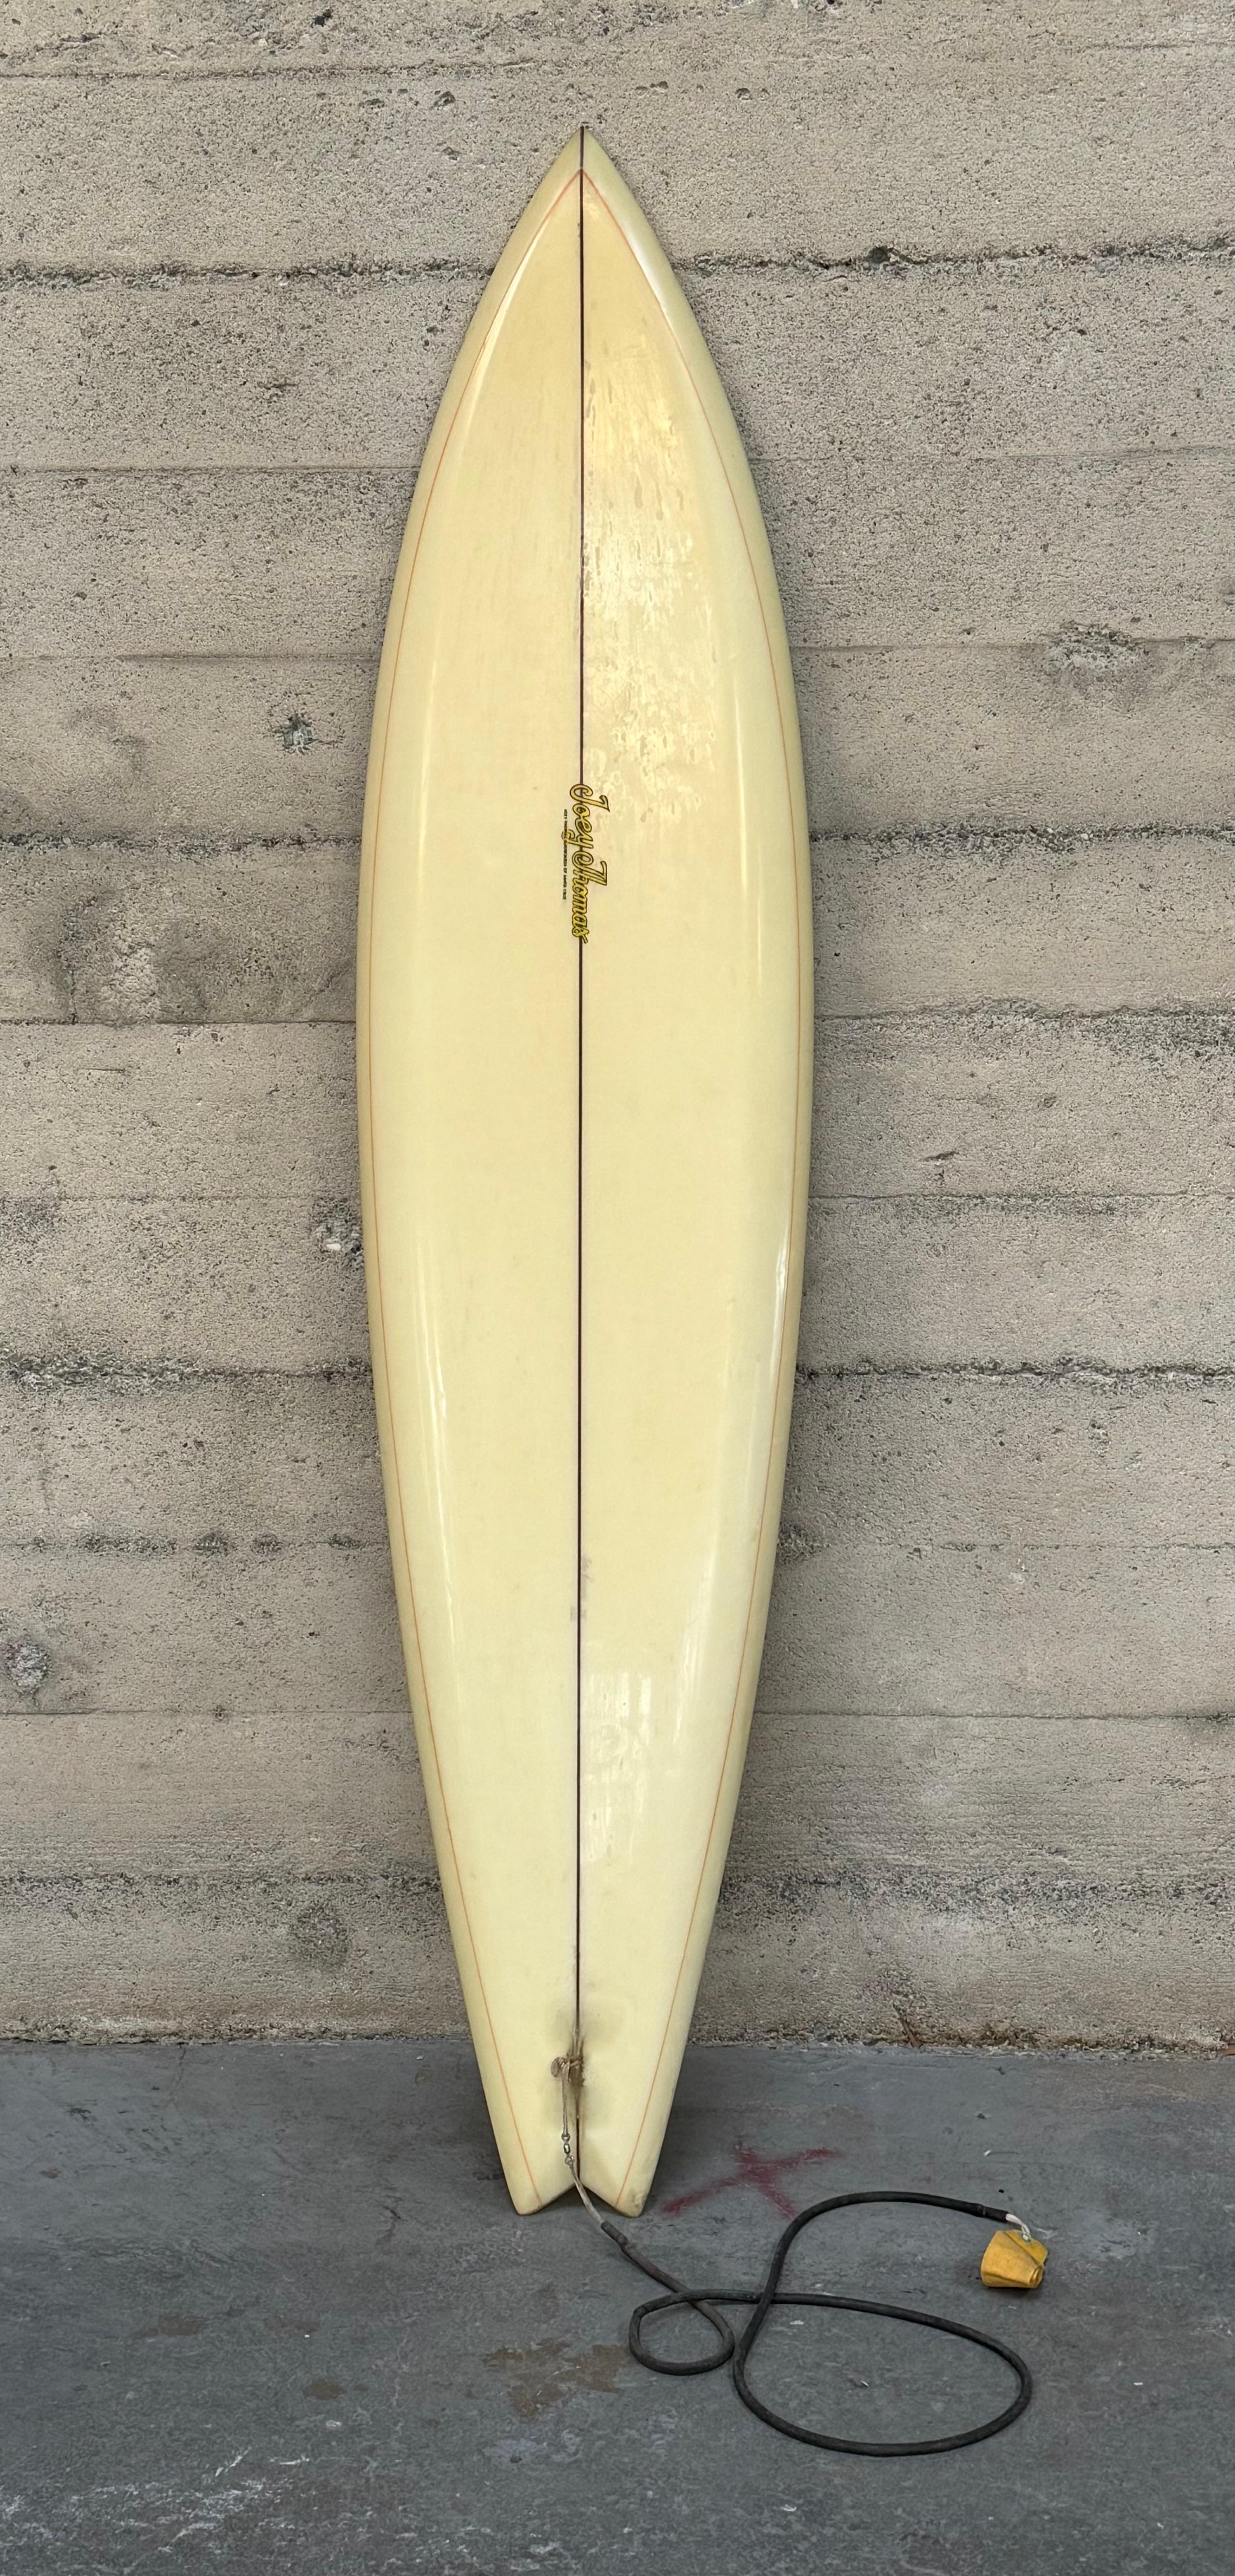 1970er Jahre Ära Surfbrett von Santa Cruz Shaper / Surfer Joey Thomas, hat dieses Beispiel eine einzige foiled Holzfinne, Schwalbe Schwanz, Schnabel Nase, unten Schiene mit einem Harz Pin-Linie entlang der Schienen Konfiguration, die eine beliebte